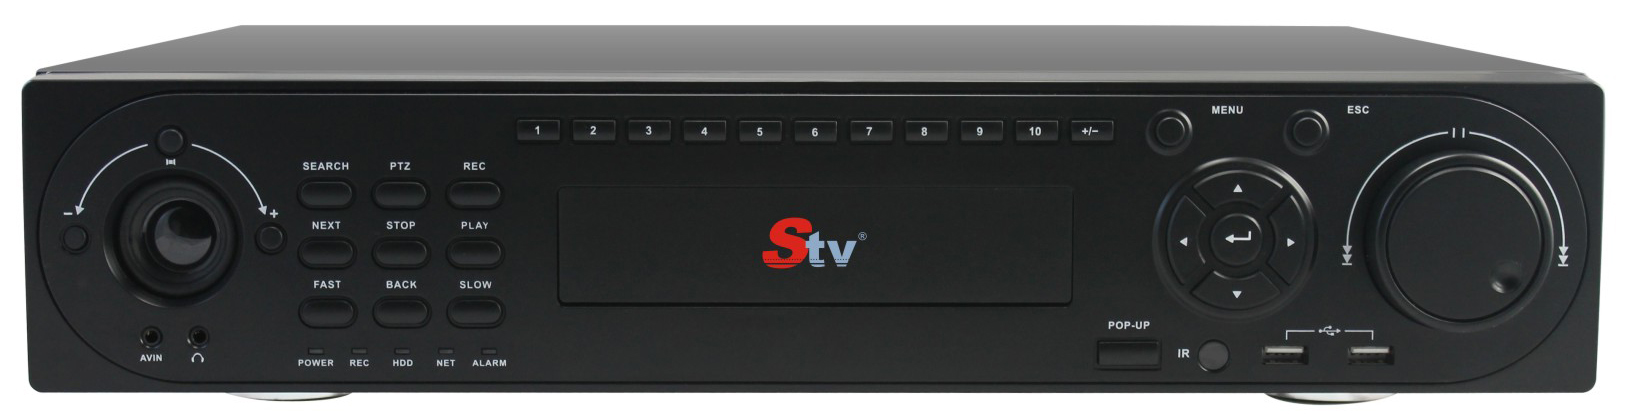 STV-HS436B